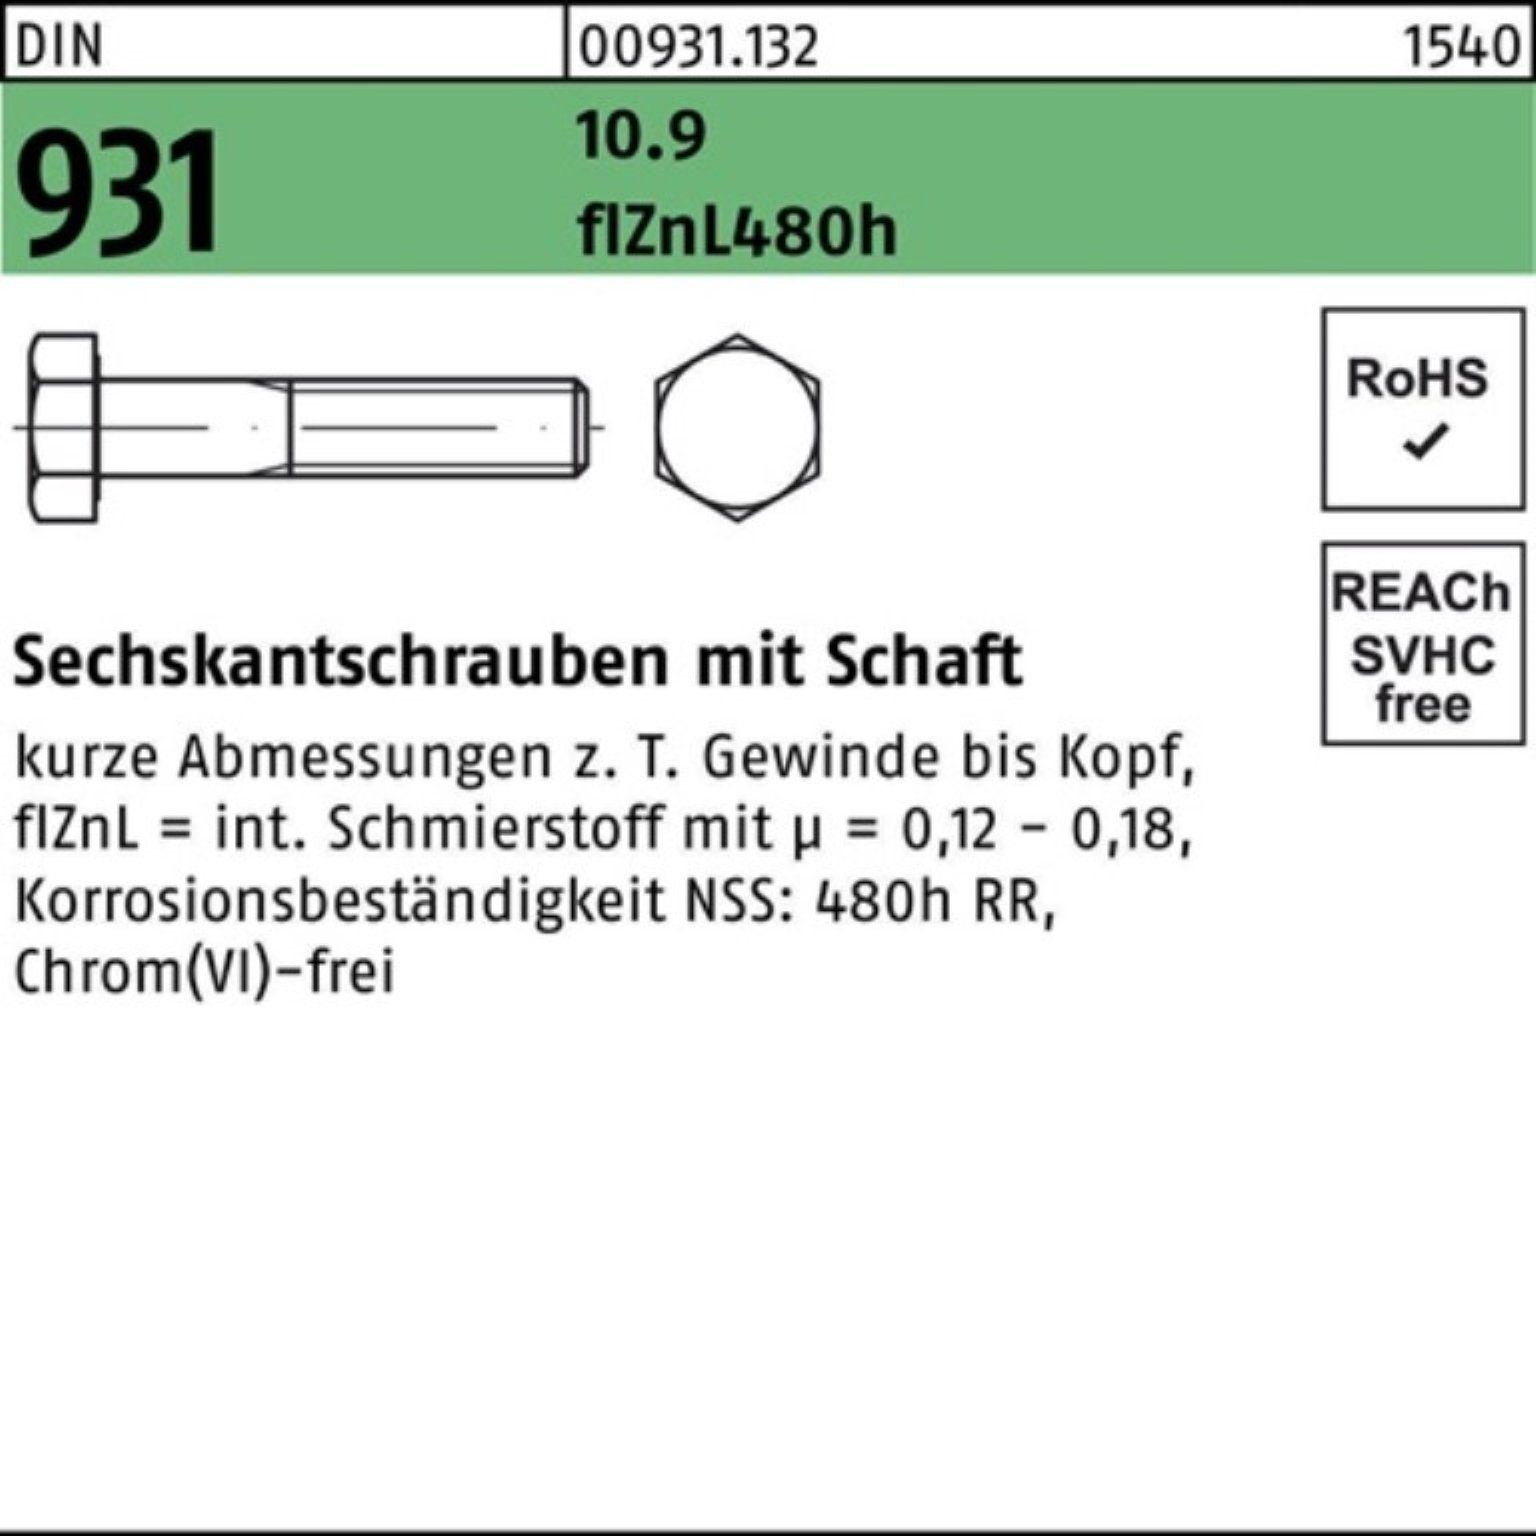 Schaft Sechskantschraube 100er DIN Pack M20x 931 Sechskantschraube flZnL/nc/x/x Reyher 290 10.9